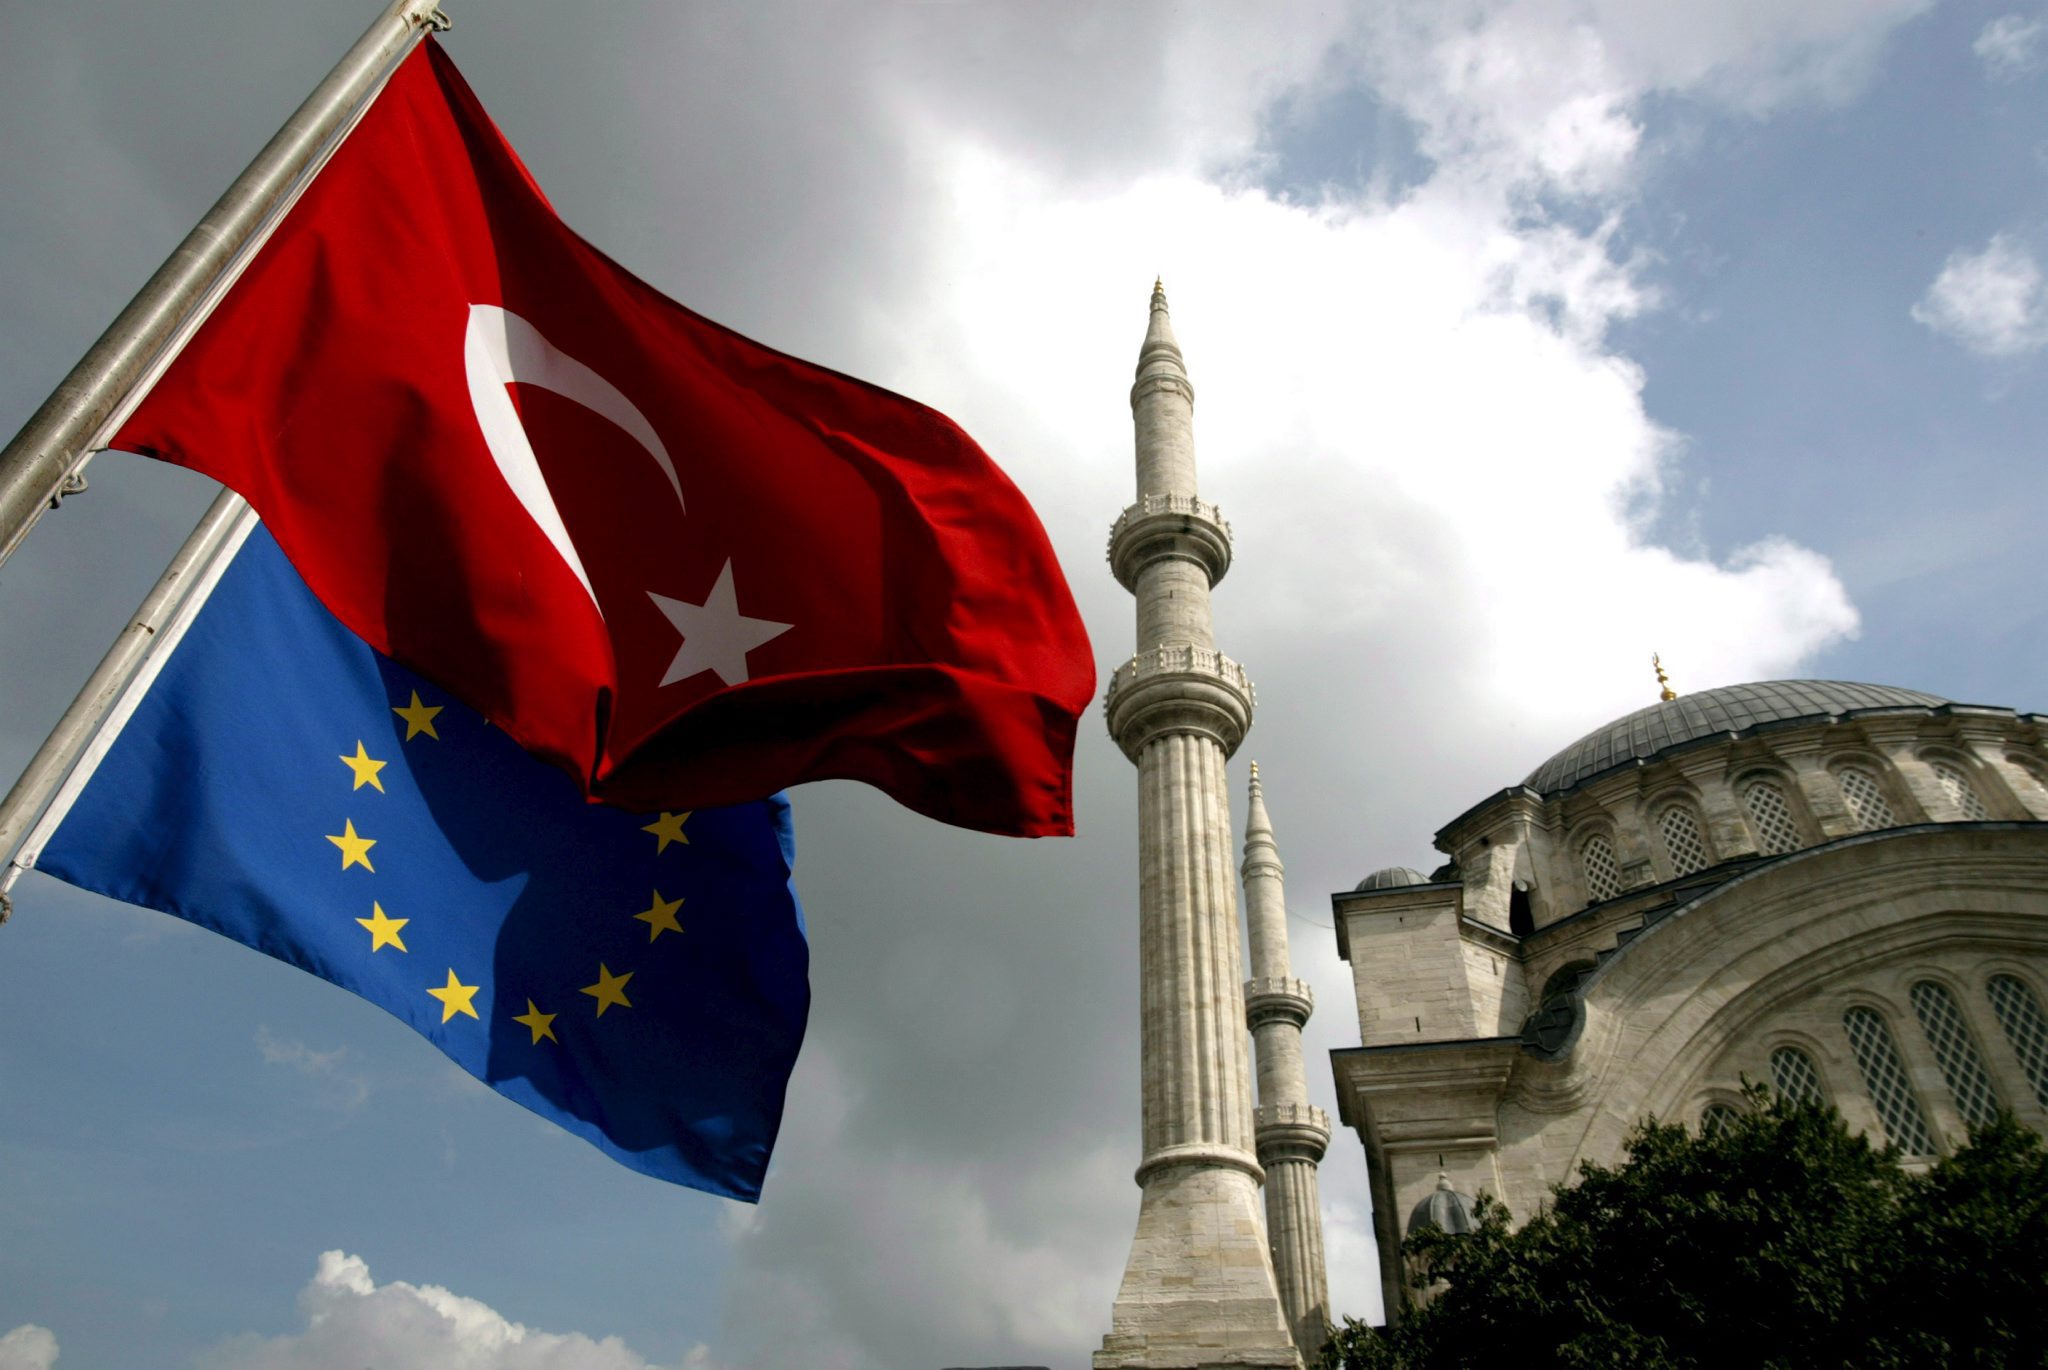 Φρανσουά Ολάντ:«Οχι στην ένταξη της Τουρκίας στην ΕΕ στην πενταετία μου»